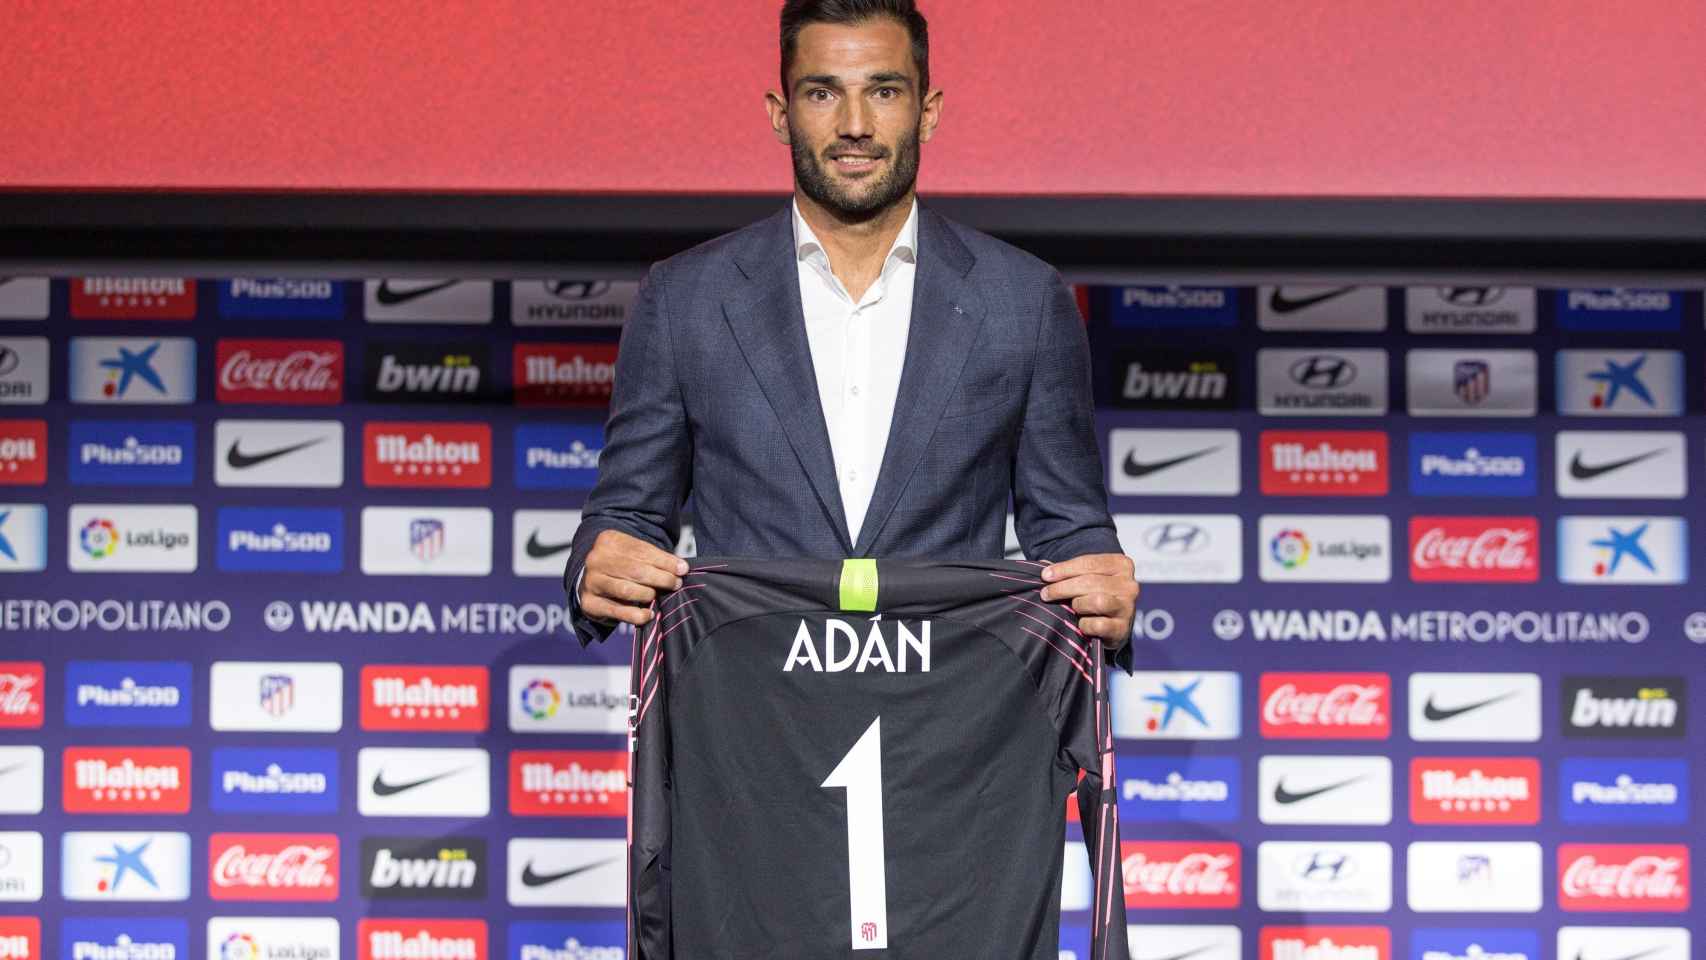 Antonio Adán, presentado como jugador del Atlético de Madrid